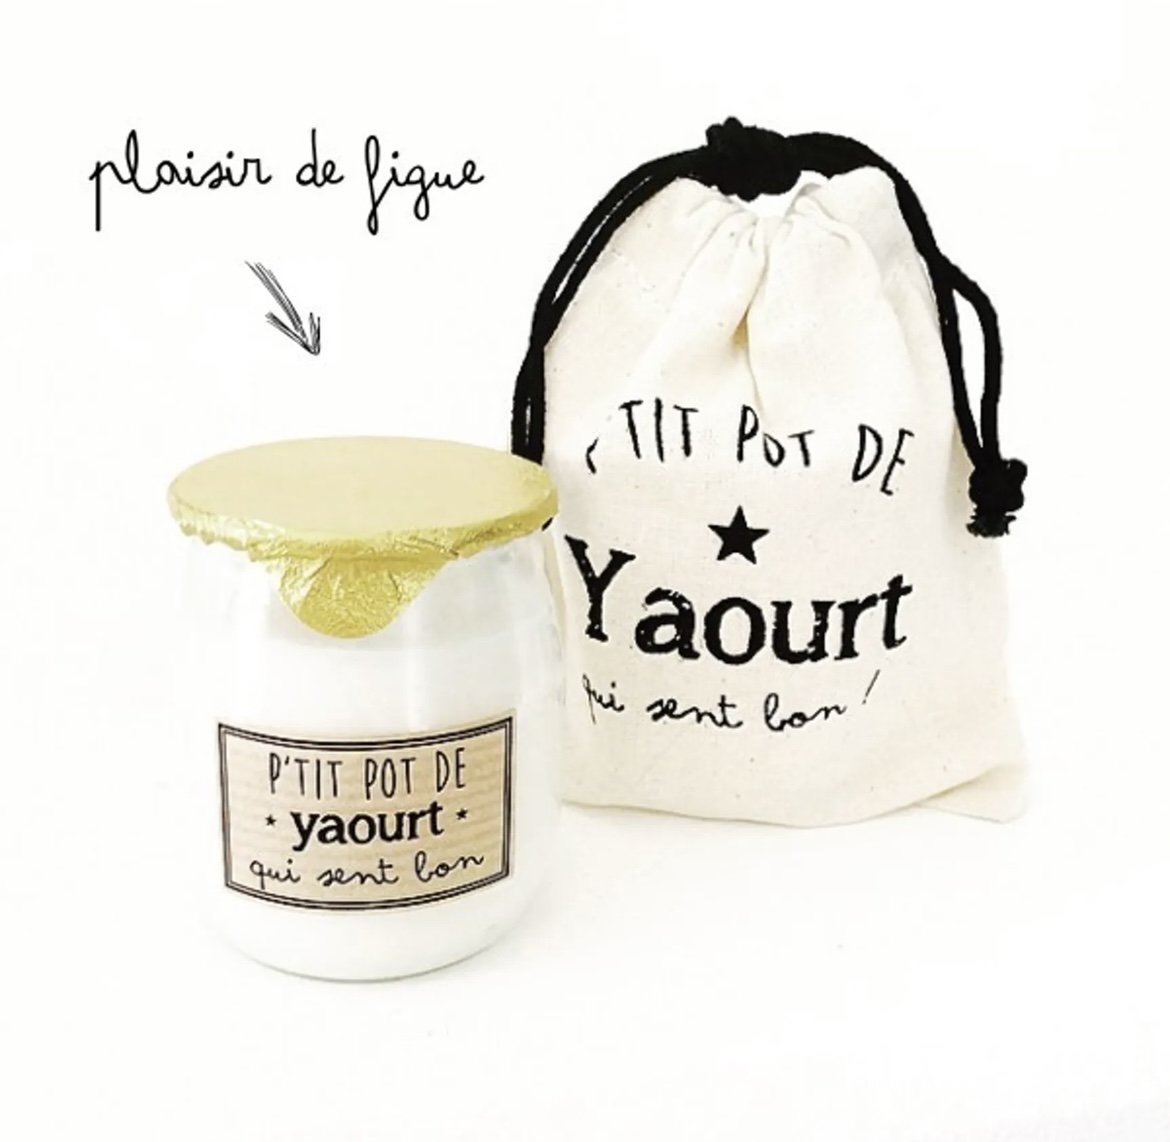 Bougie P’tit pot de yaourt Plaisir de figue